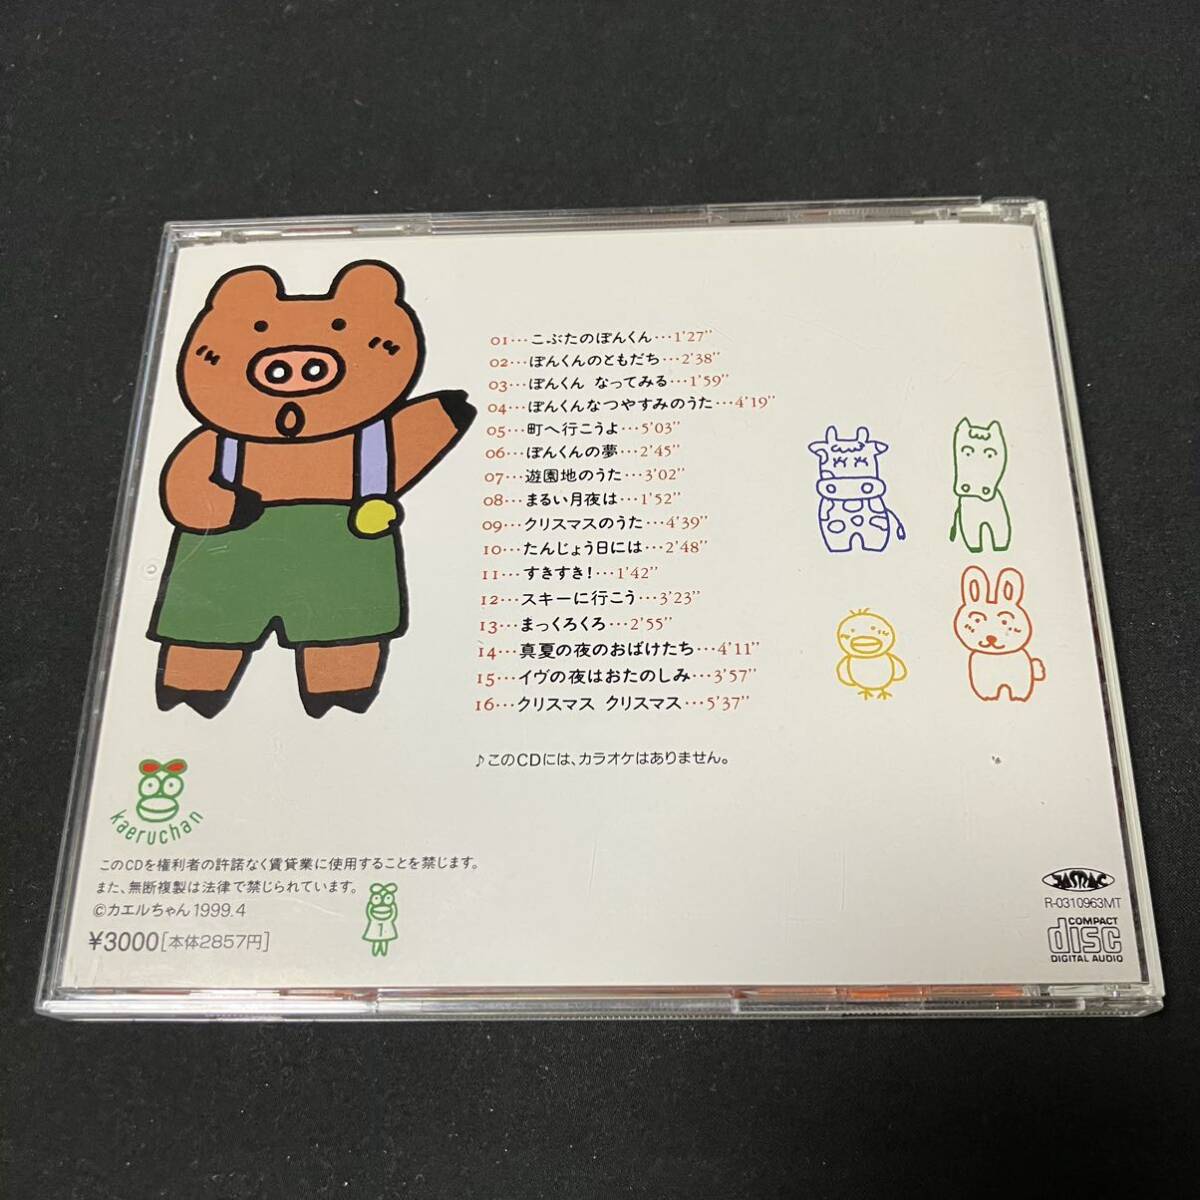 S15e CD открытка есть больше рисовое поле ... музыка panel ламинария .. .. kun 